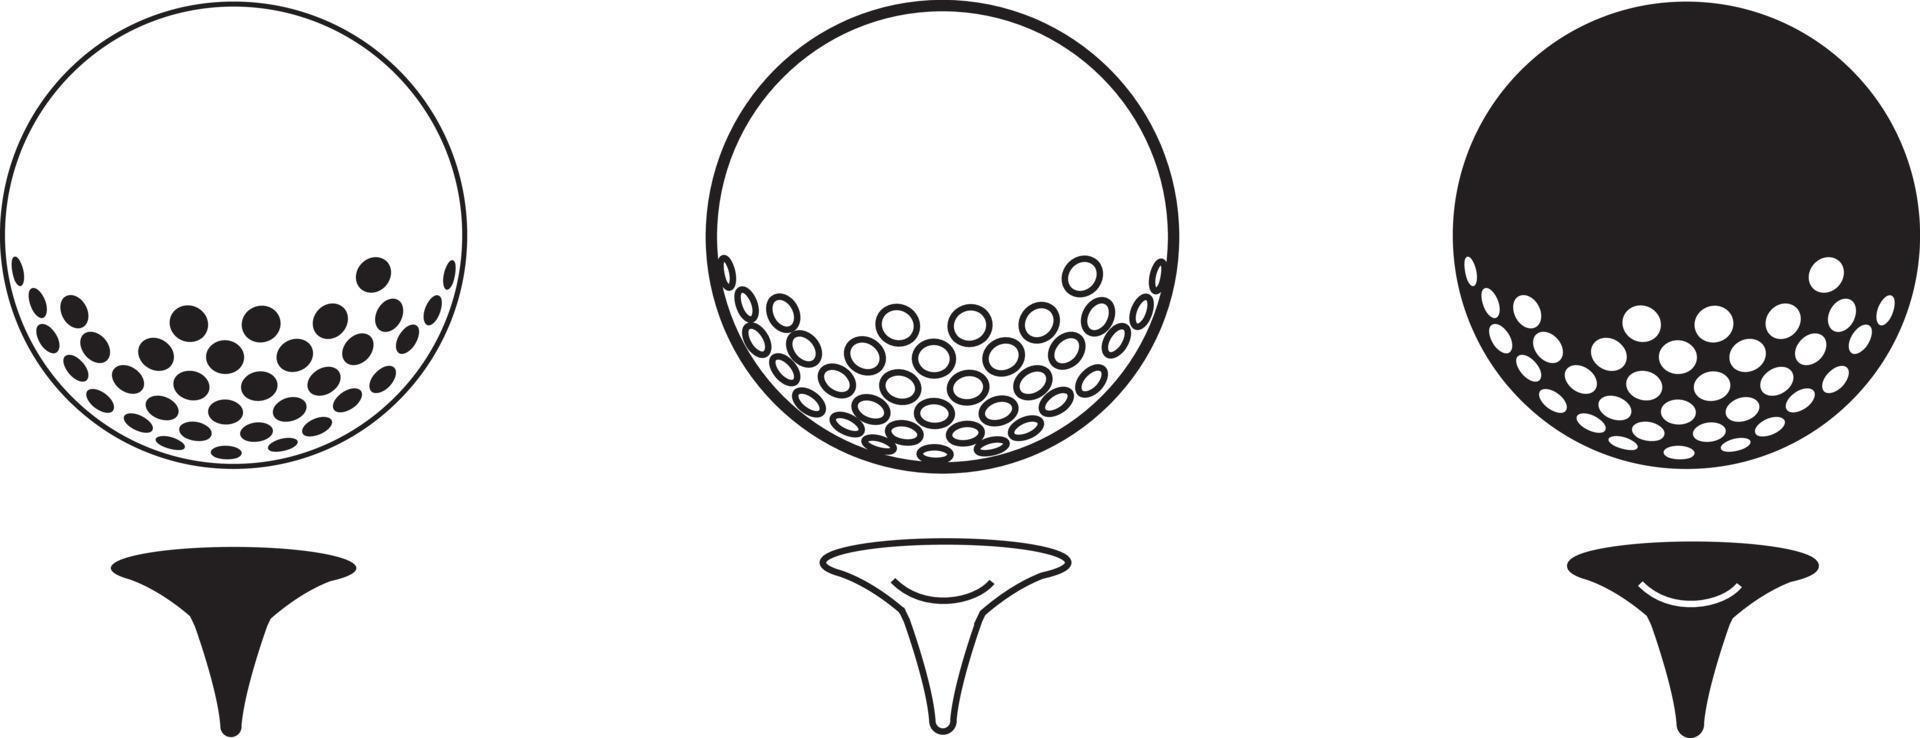 fashionabla vektor ikon illustration av golfboll på tee svart och vitt material